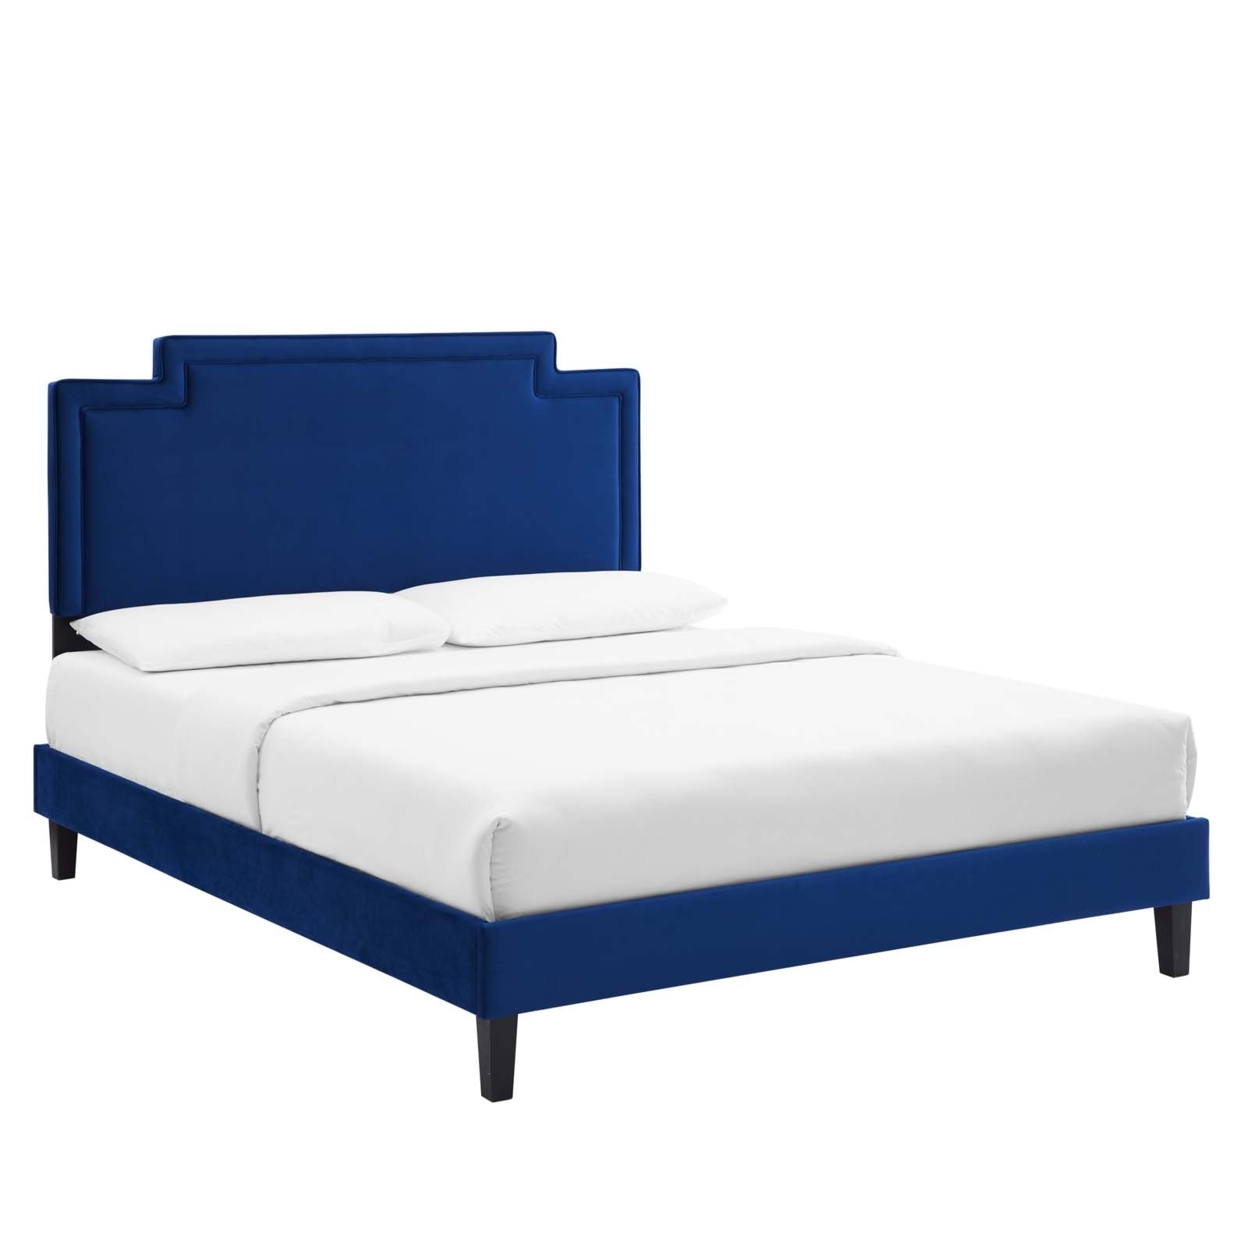 Full Bed, Navy Blue Velvet, Geometric Headboard, Tapered Legs